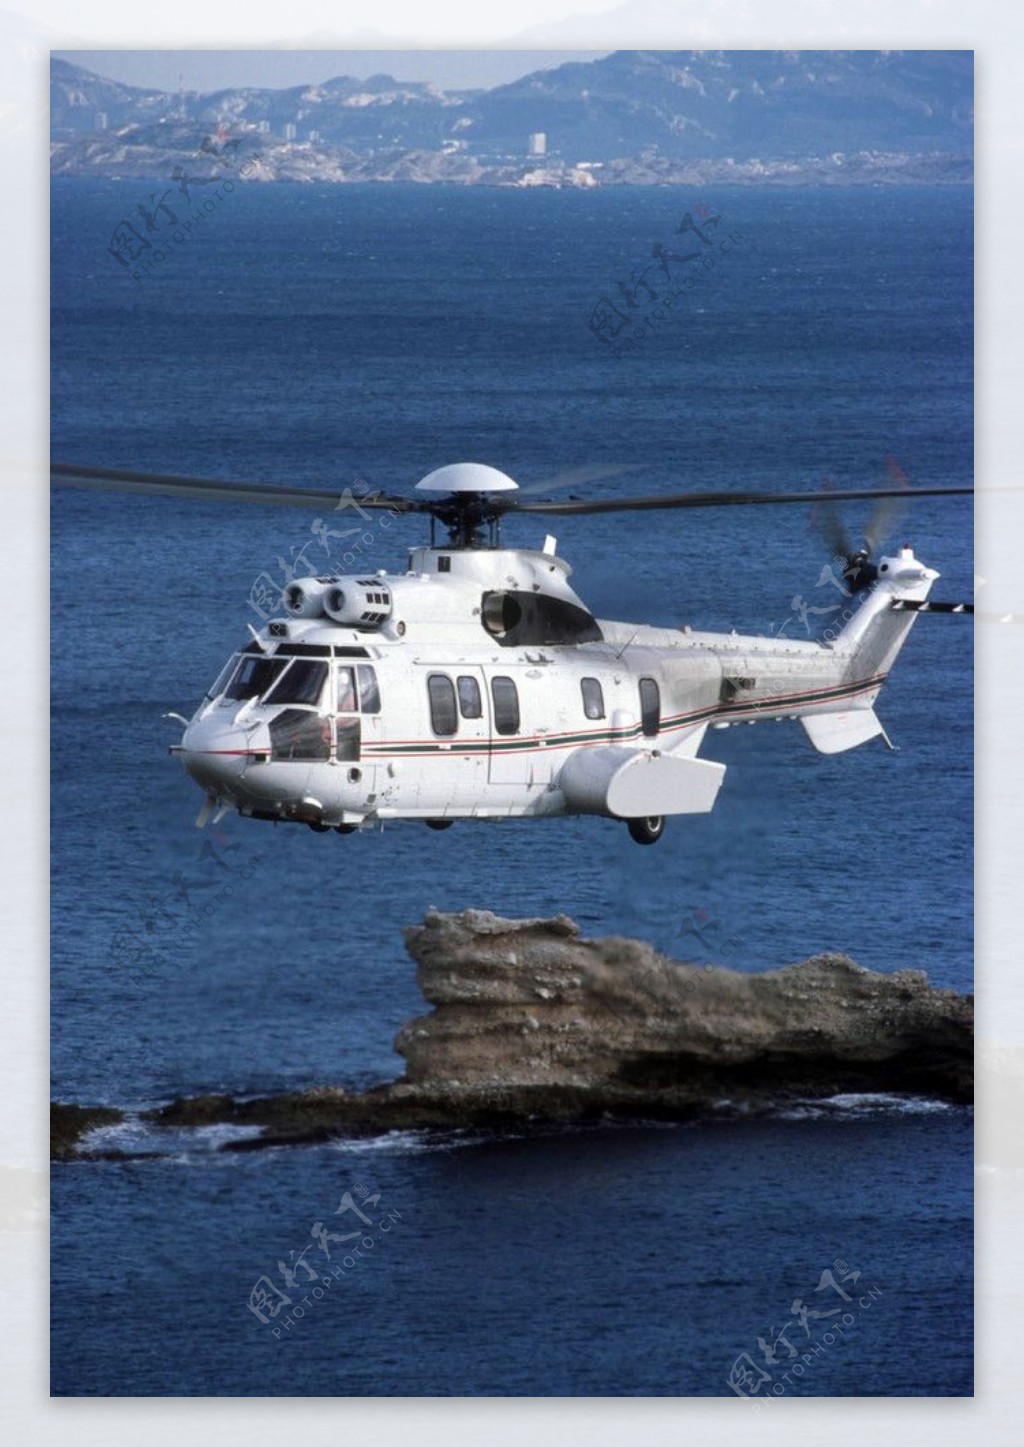 直升机图片